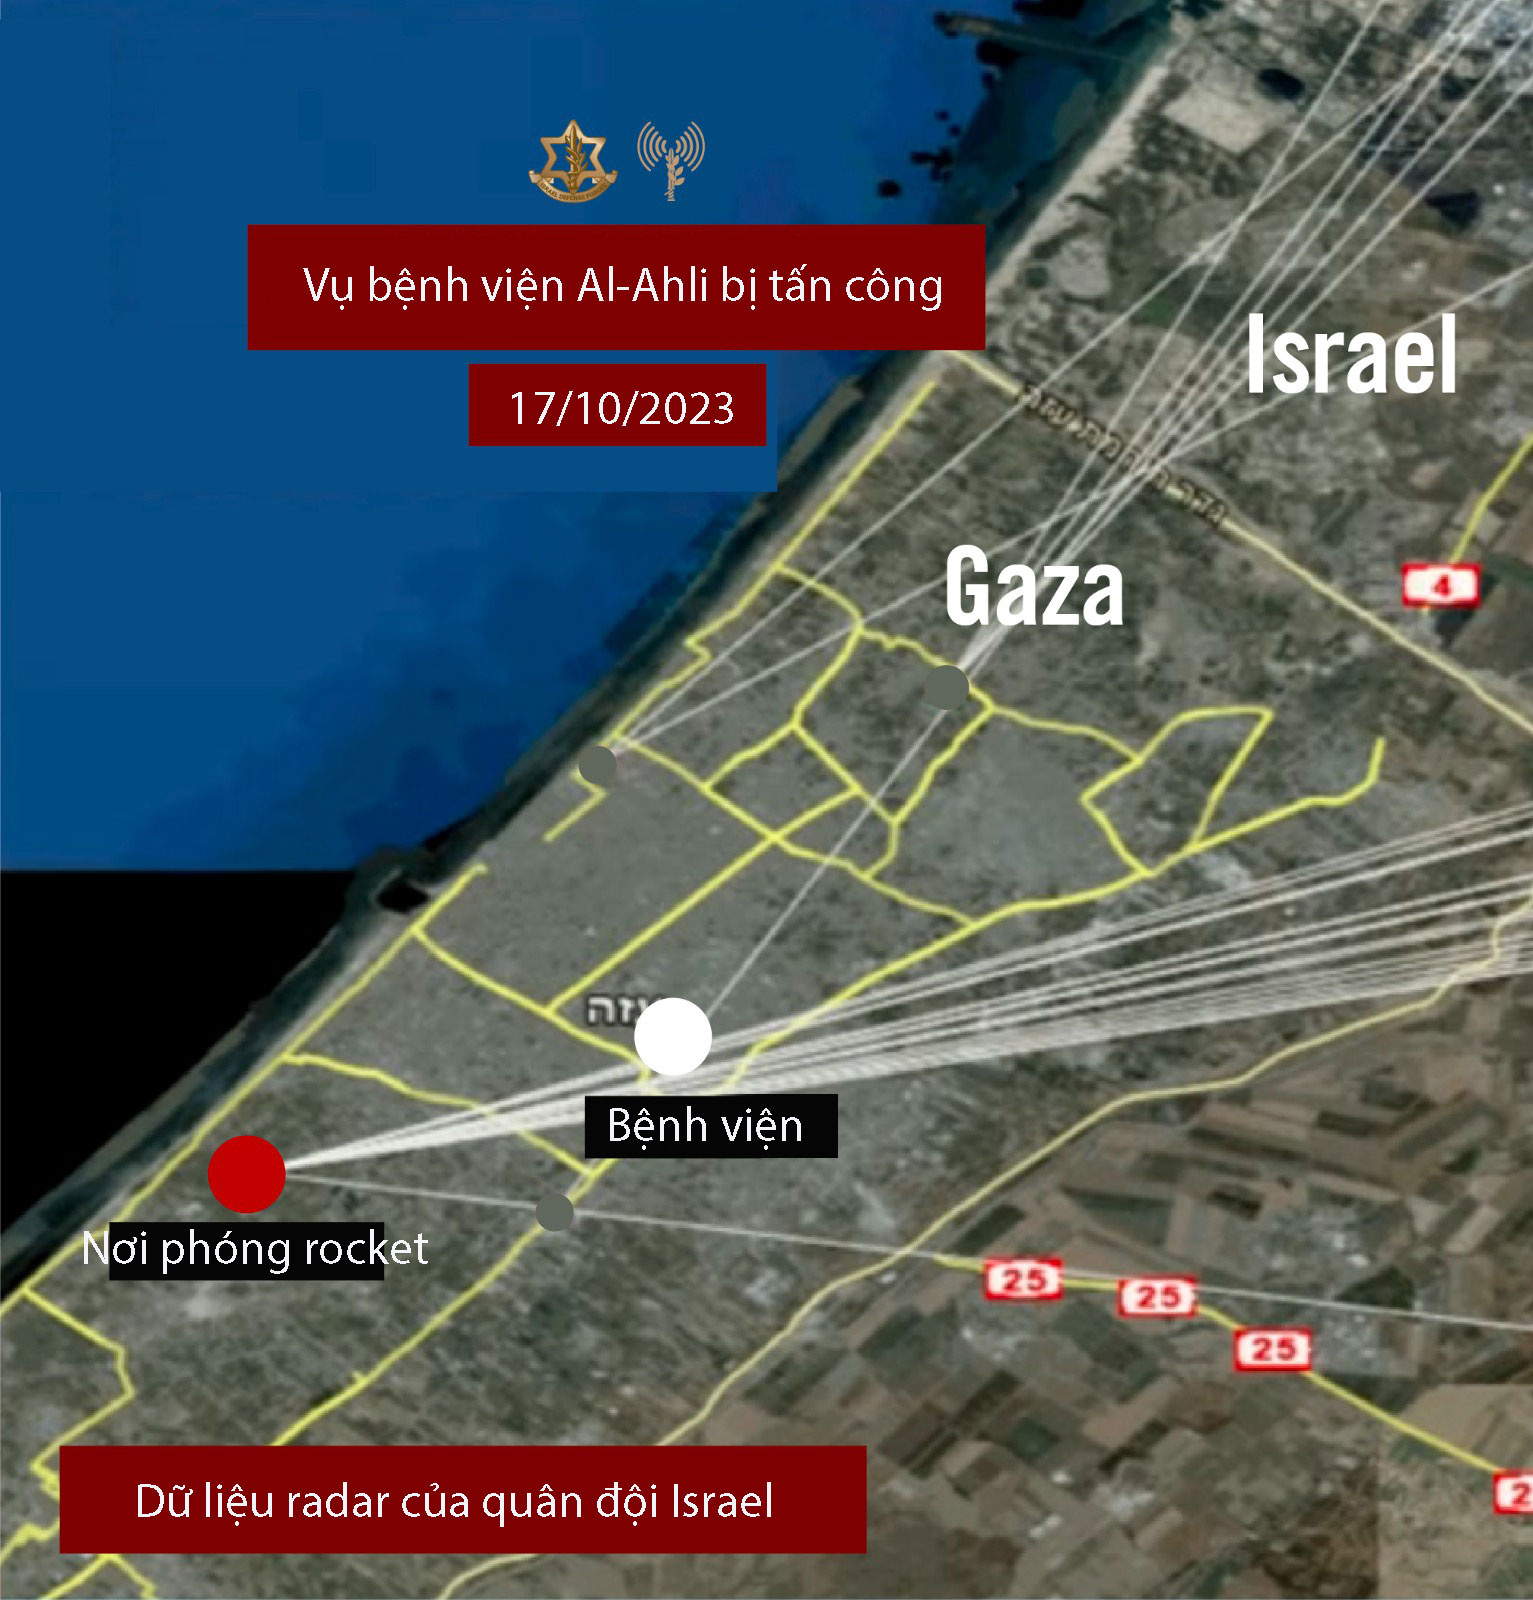 Dữ liệu radar do IDF công bố cho thấy loạt rocket phóng gần bệnh viện Al-Ahli ngày 17/10. Ảnh: IDF